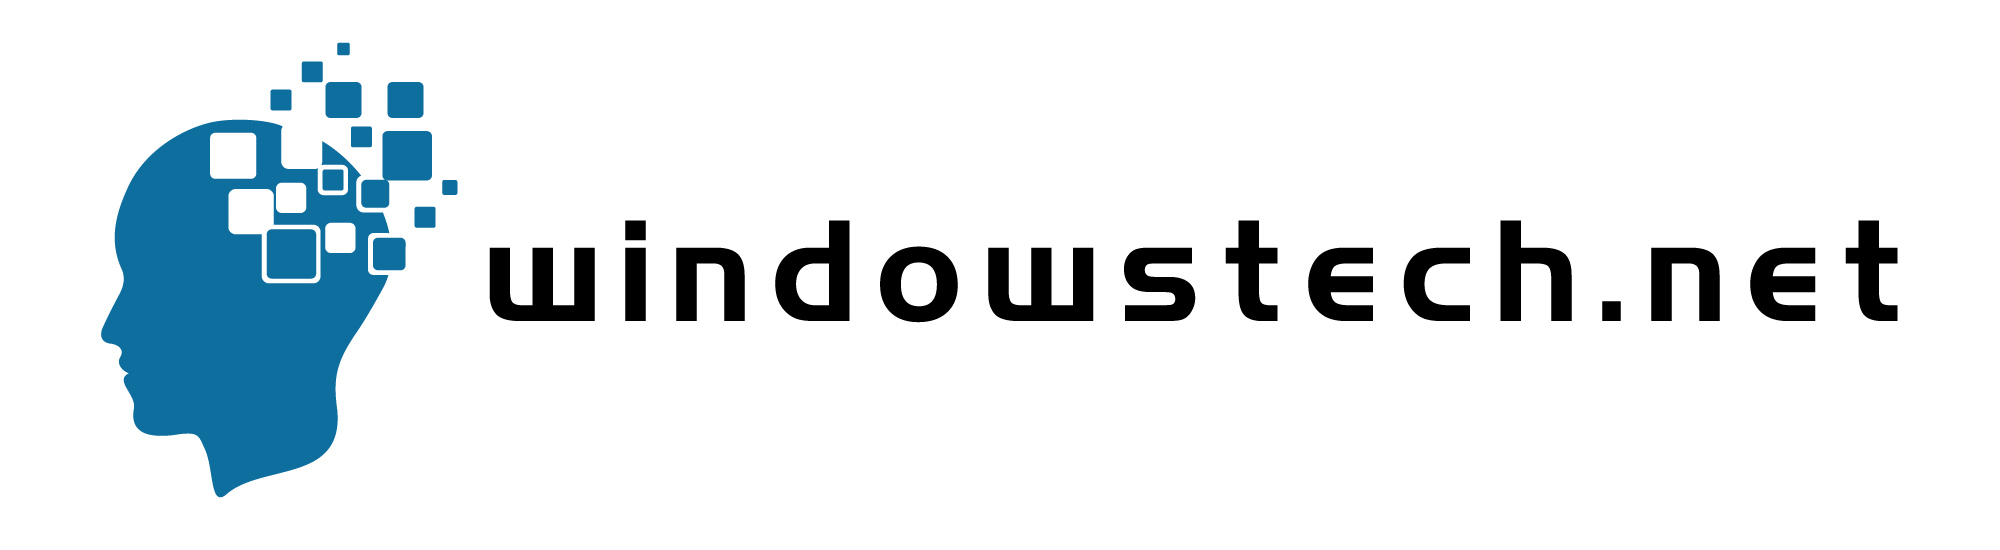 windowstech.net